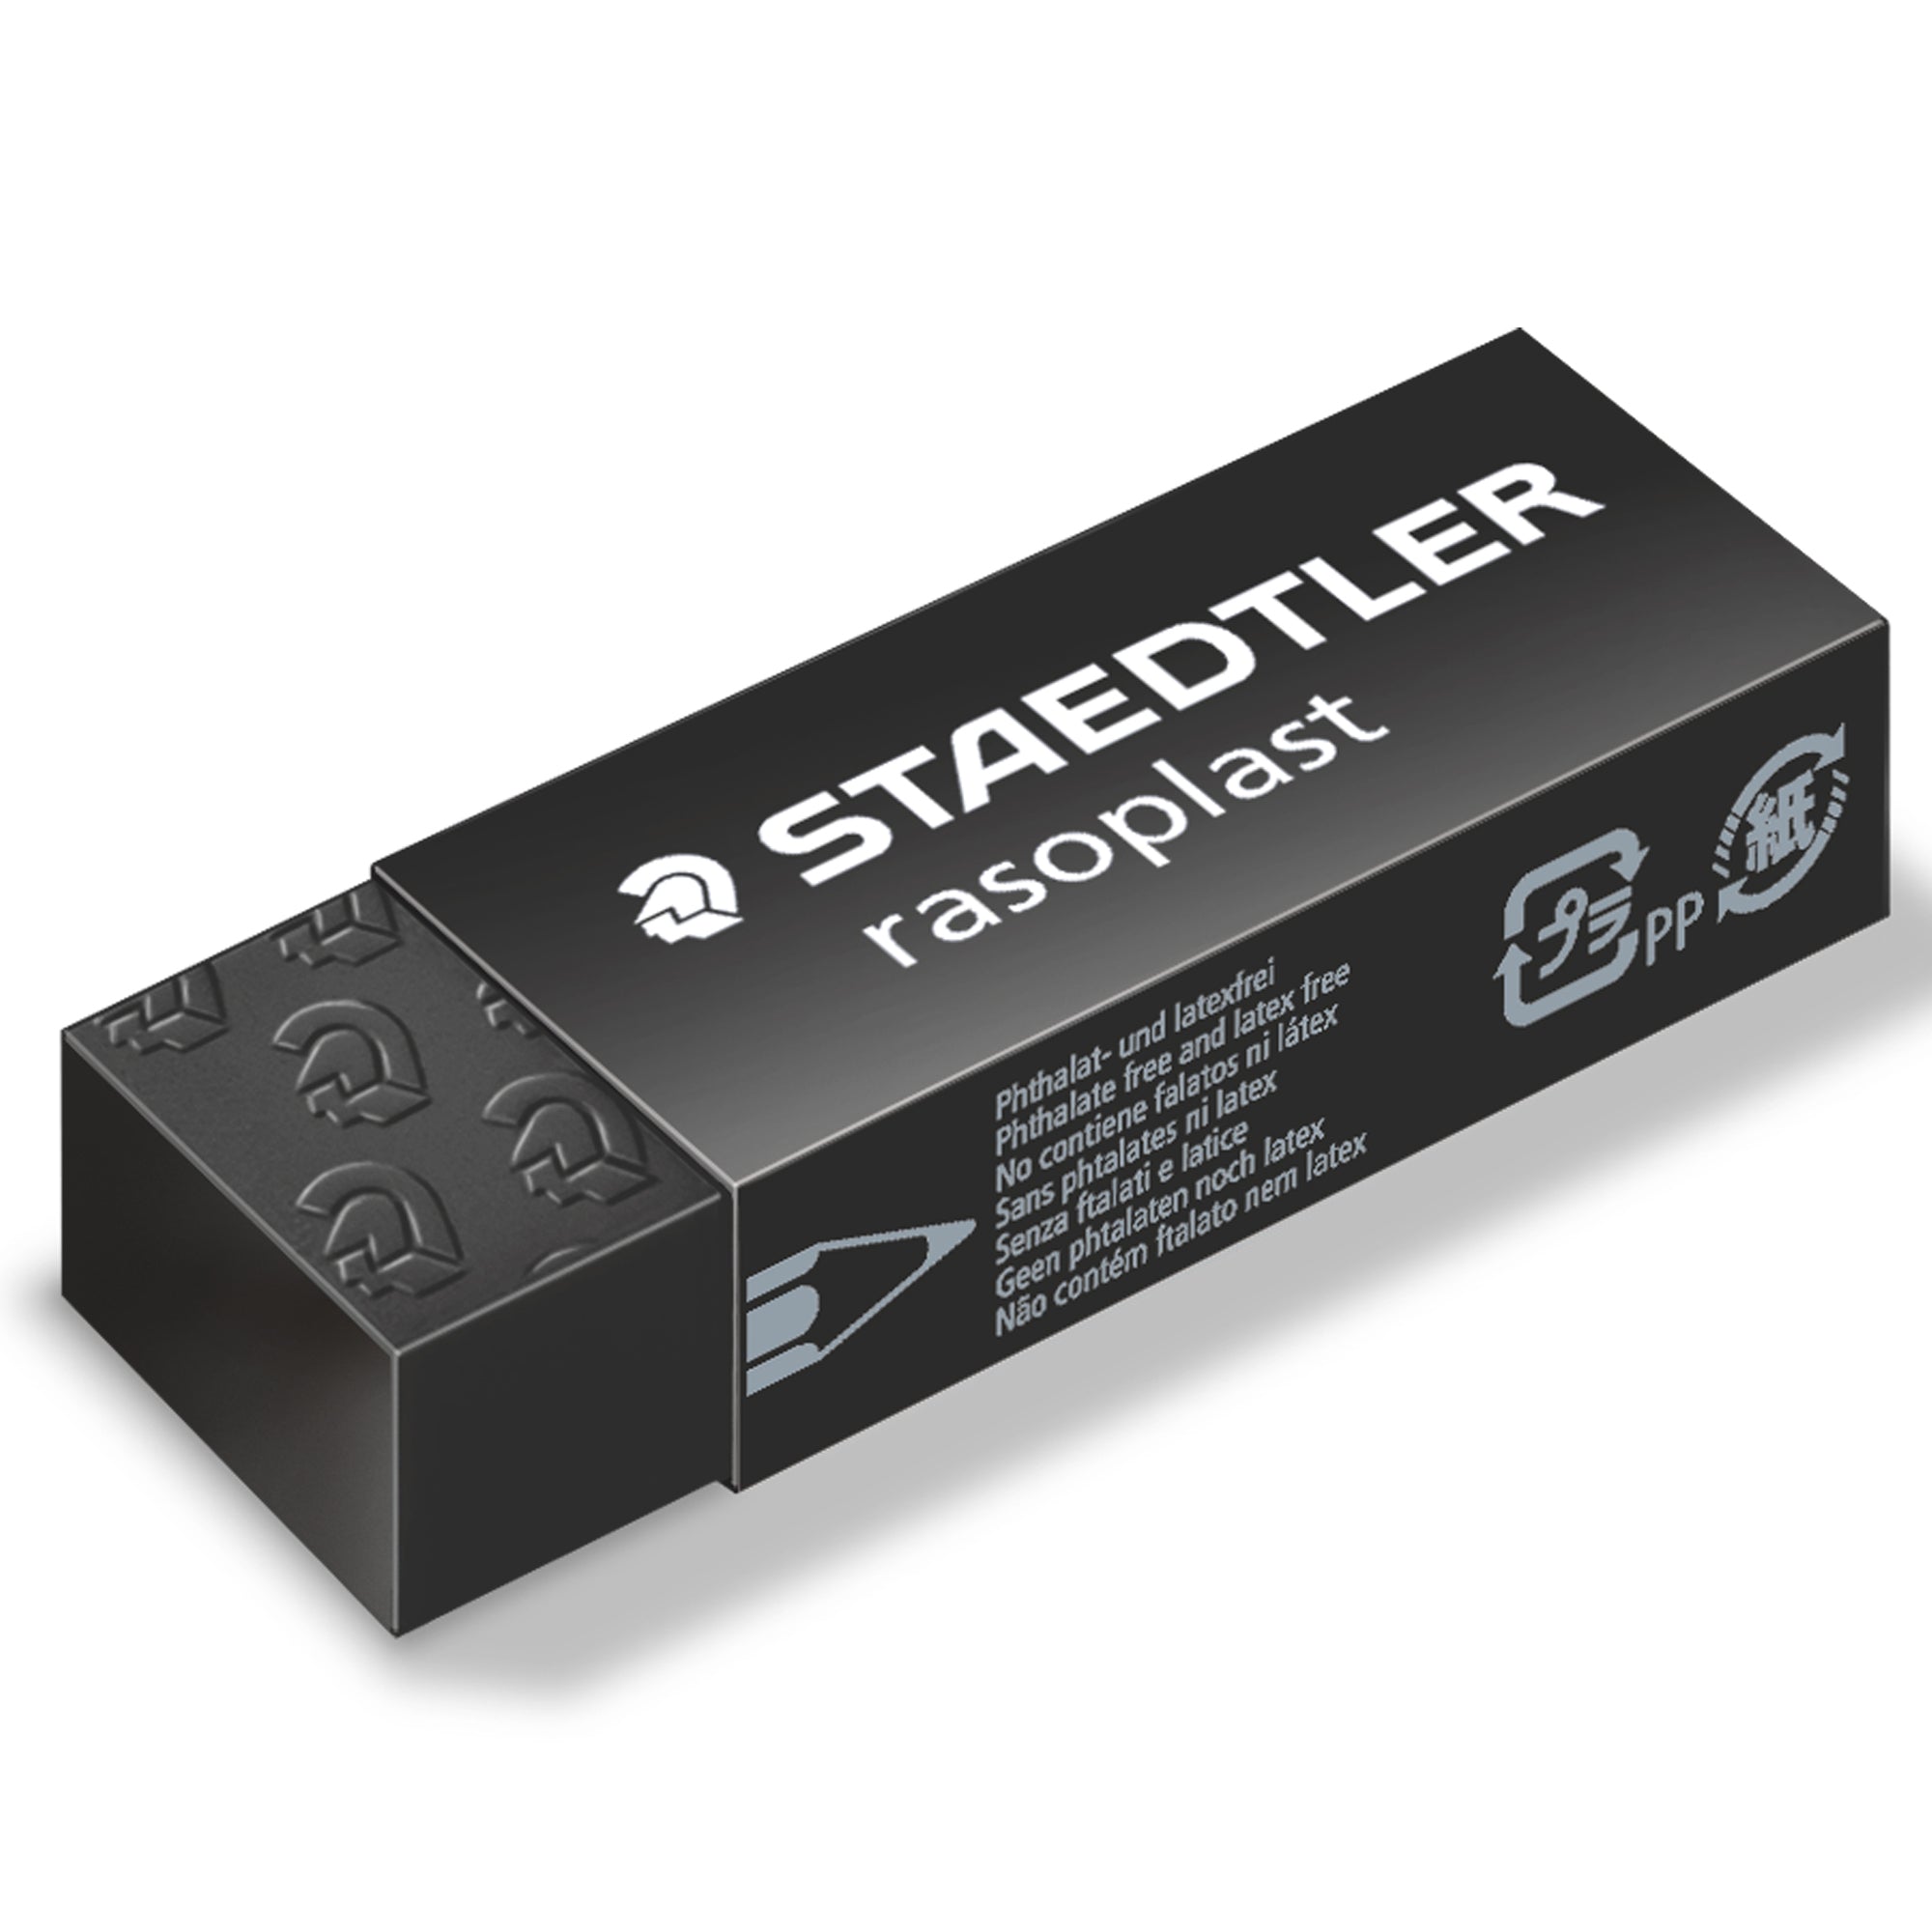 staedtler-box-20-gomme-rasoplast-526-b20-9-dim-63x13x23mm-nera-matita